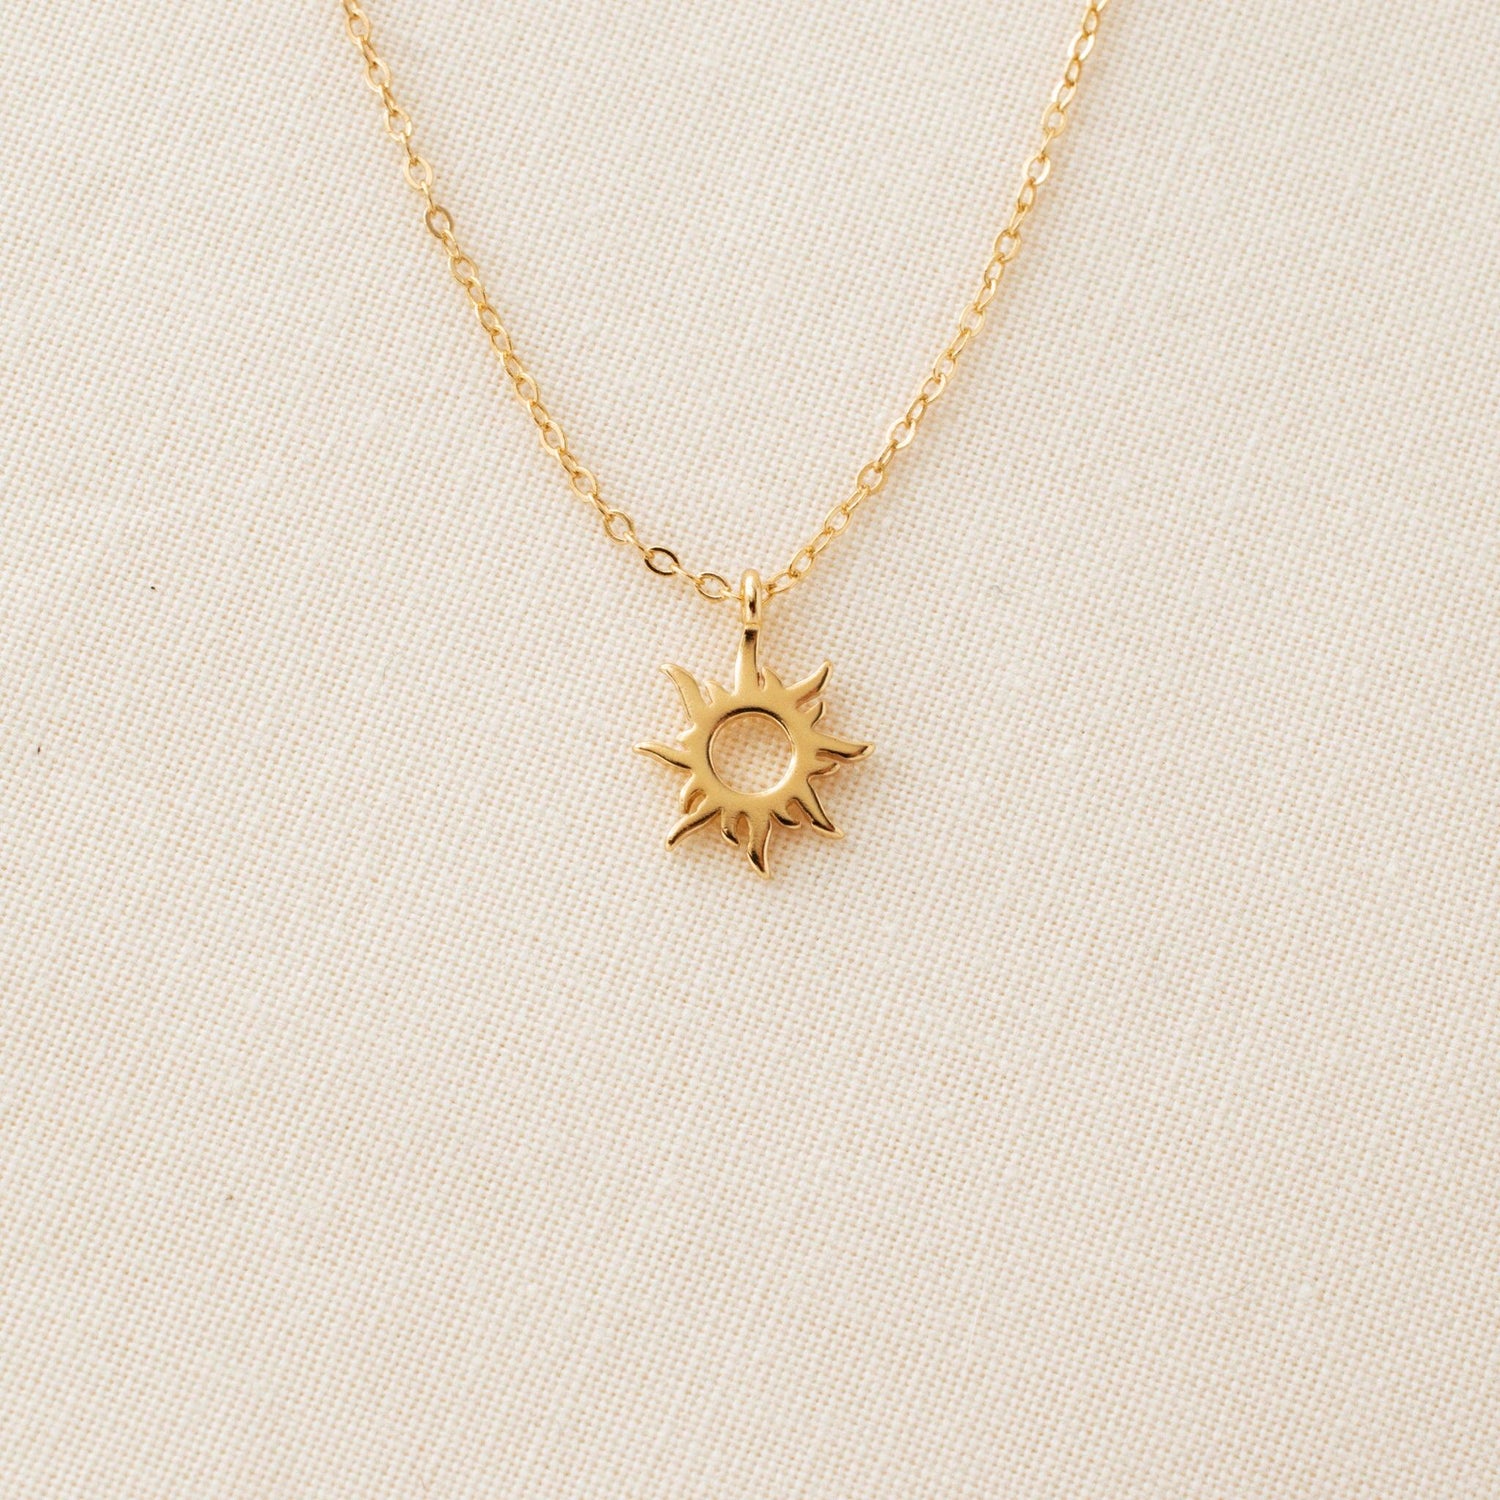 Sun Necklace - avantejewel.com